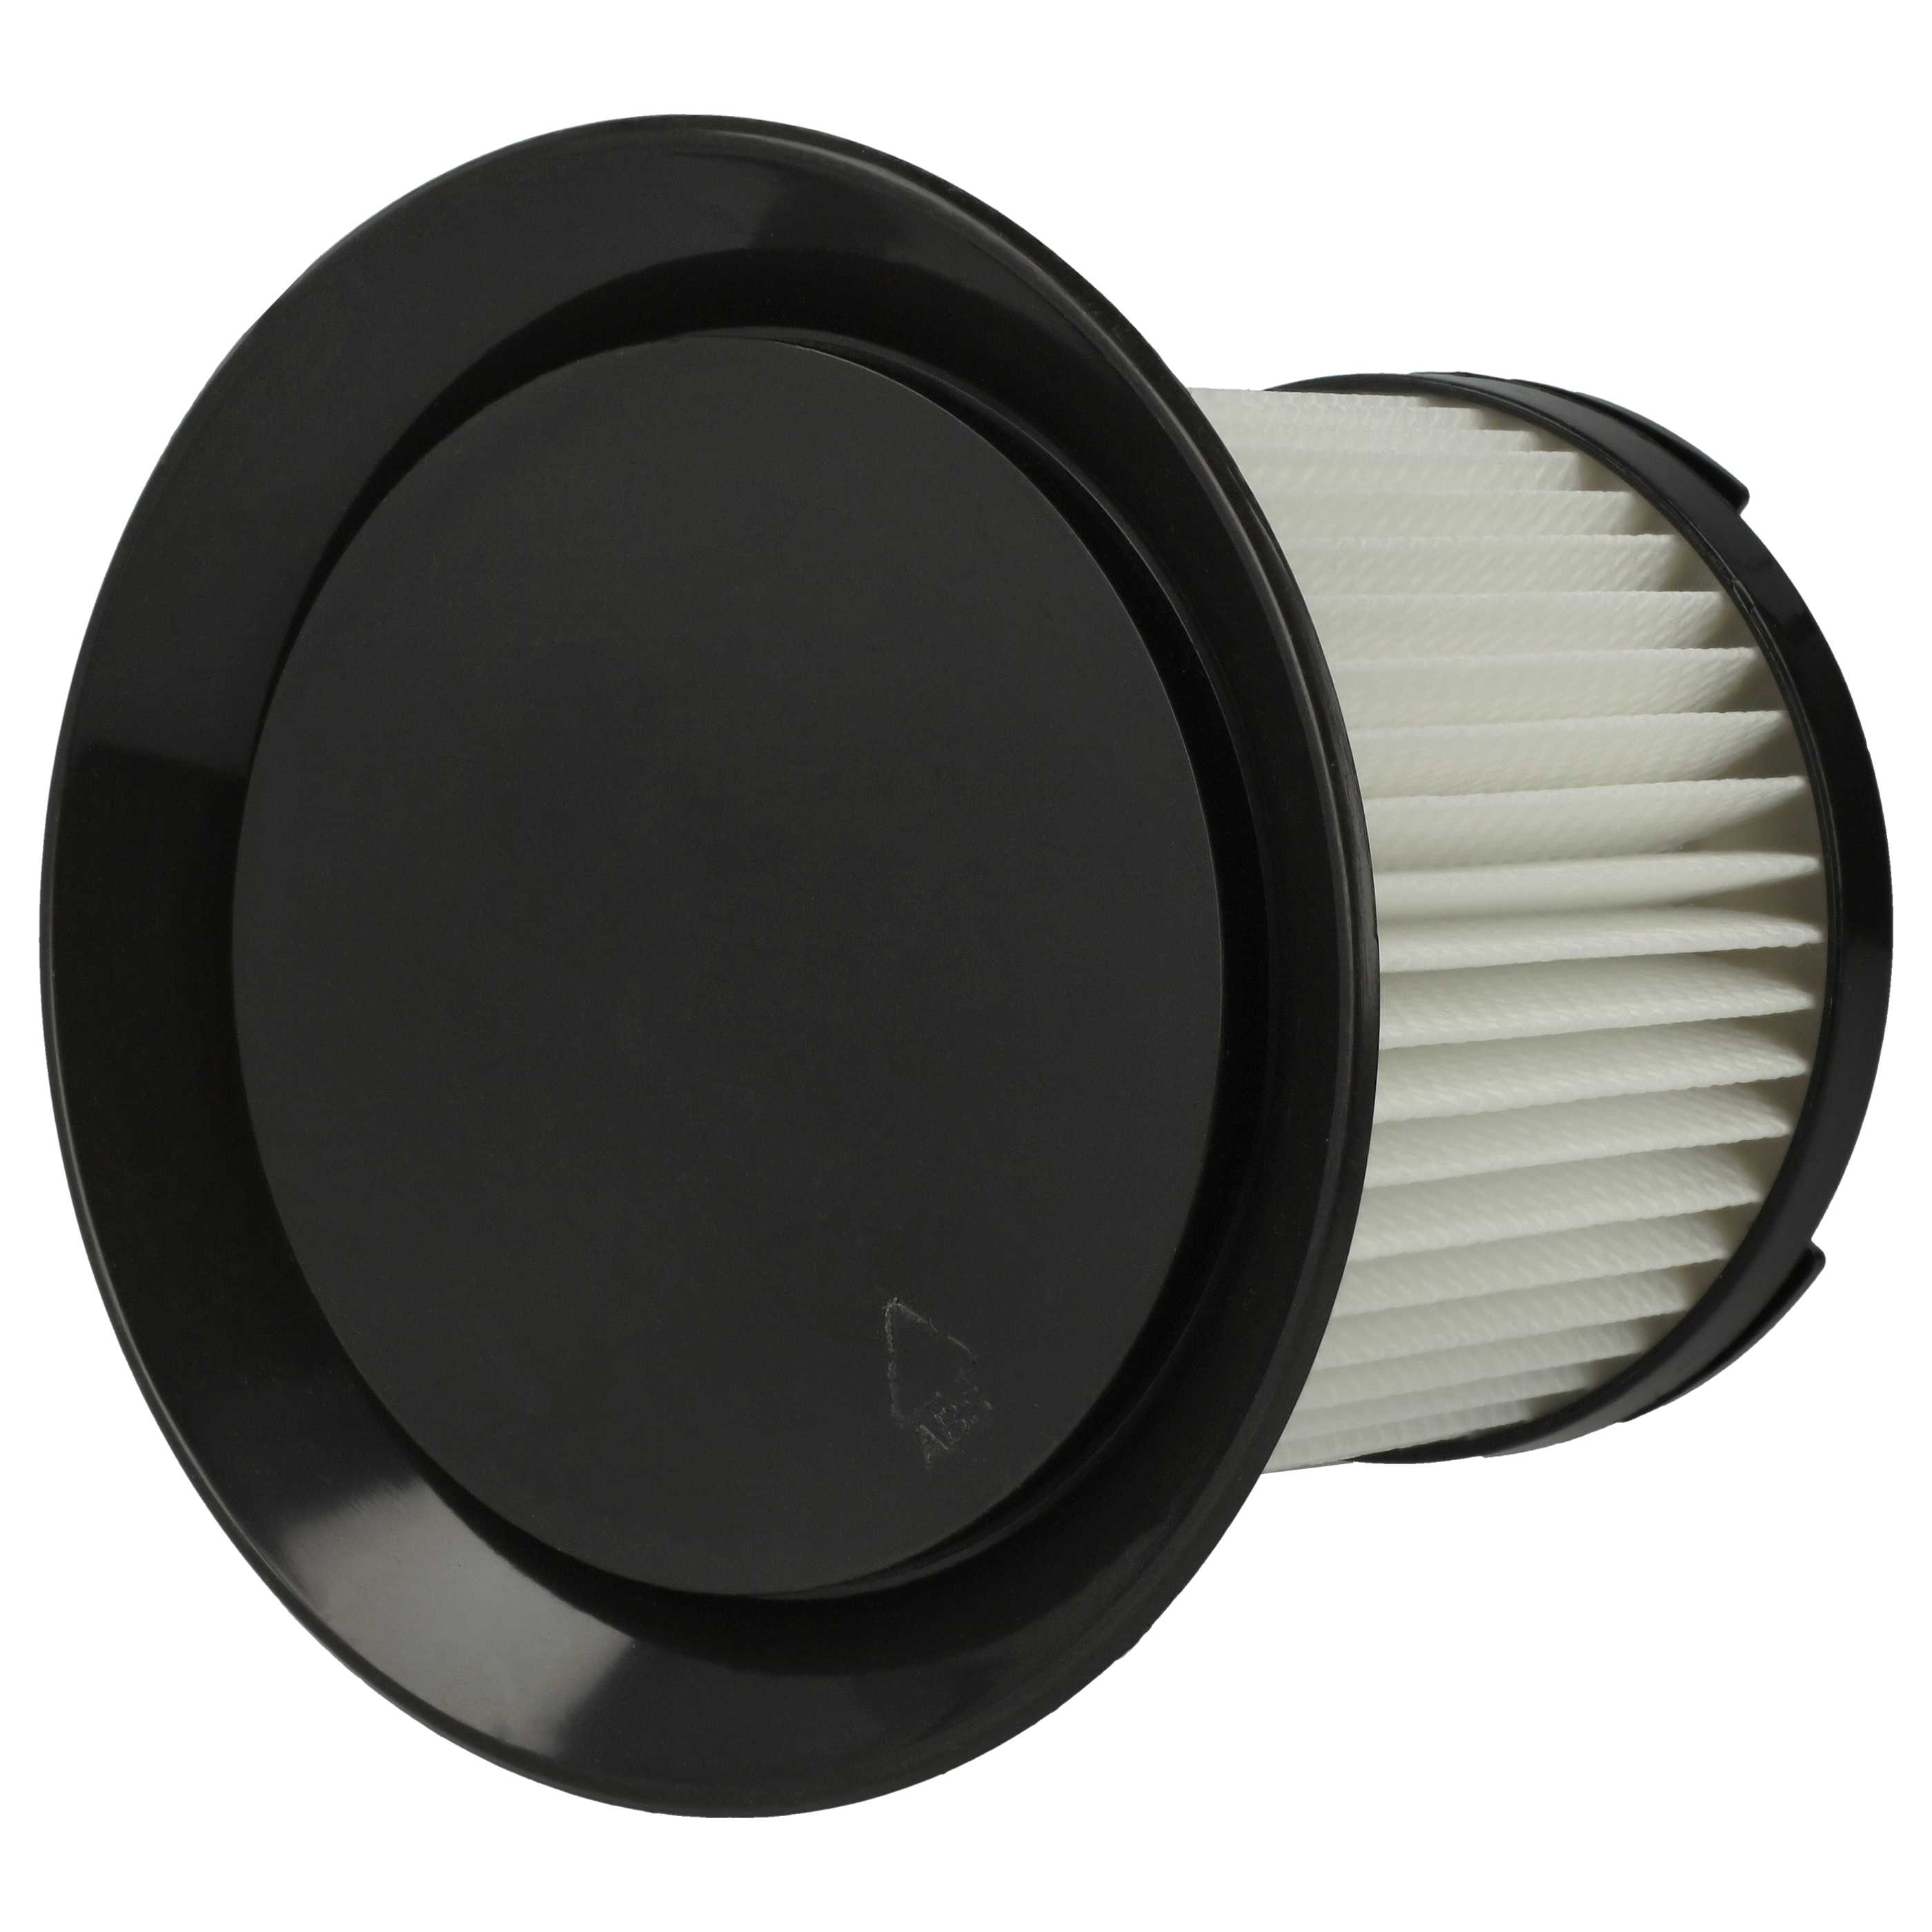 2x Filtro per aspirapolvere Sichler Zyklon BLS-200 - filtro HEPA, nero / bianco